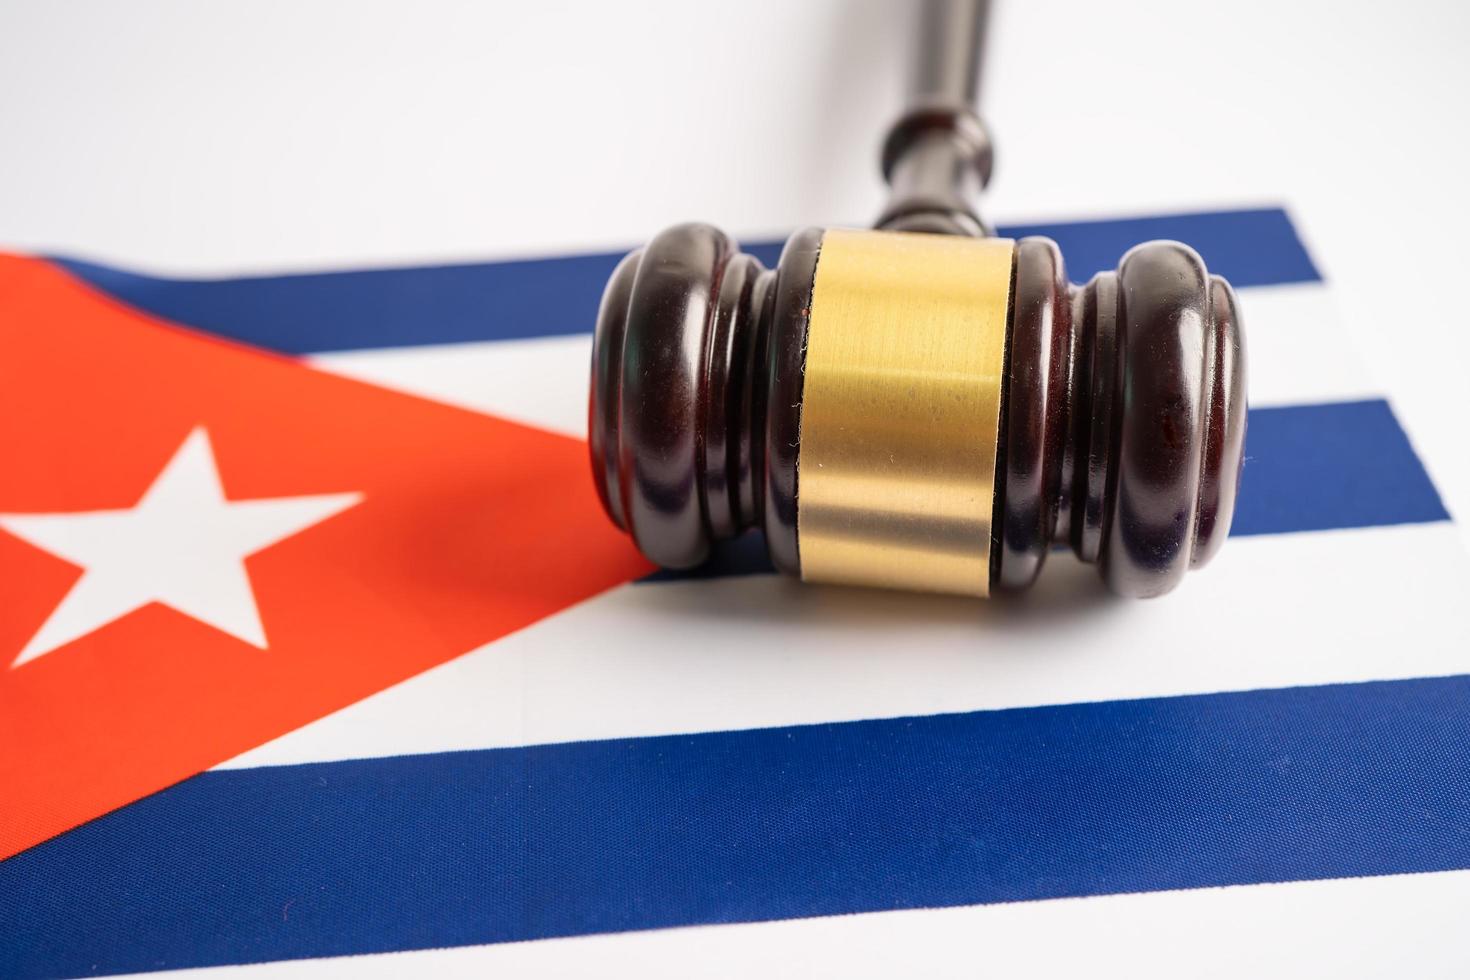 kubanische flagge mit hammer für richteranwalt. konzept des rechts- und justizgerichtshofs. foto